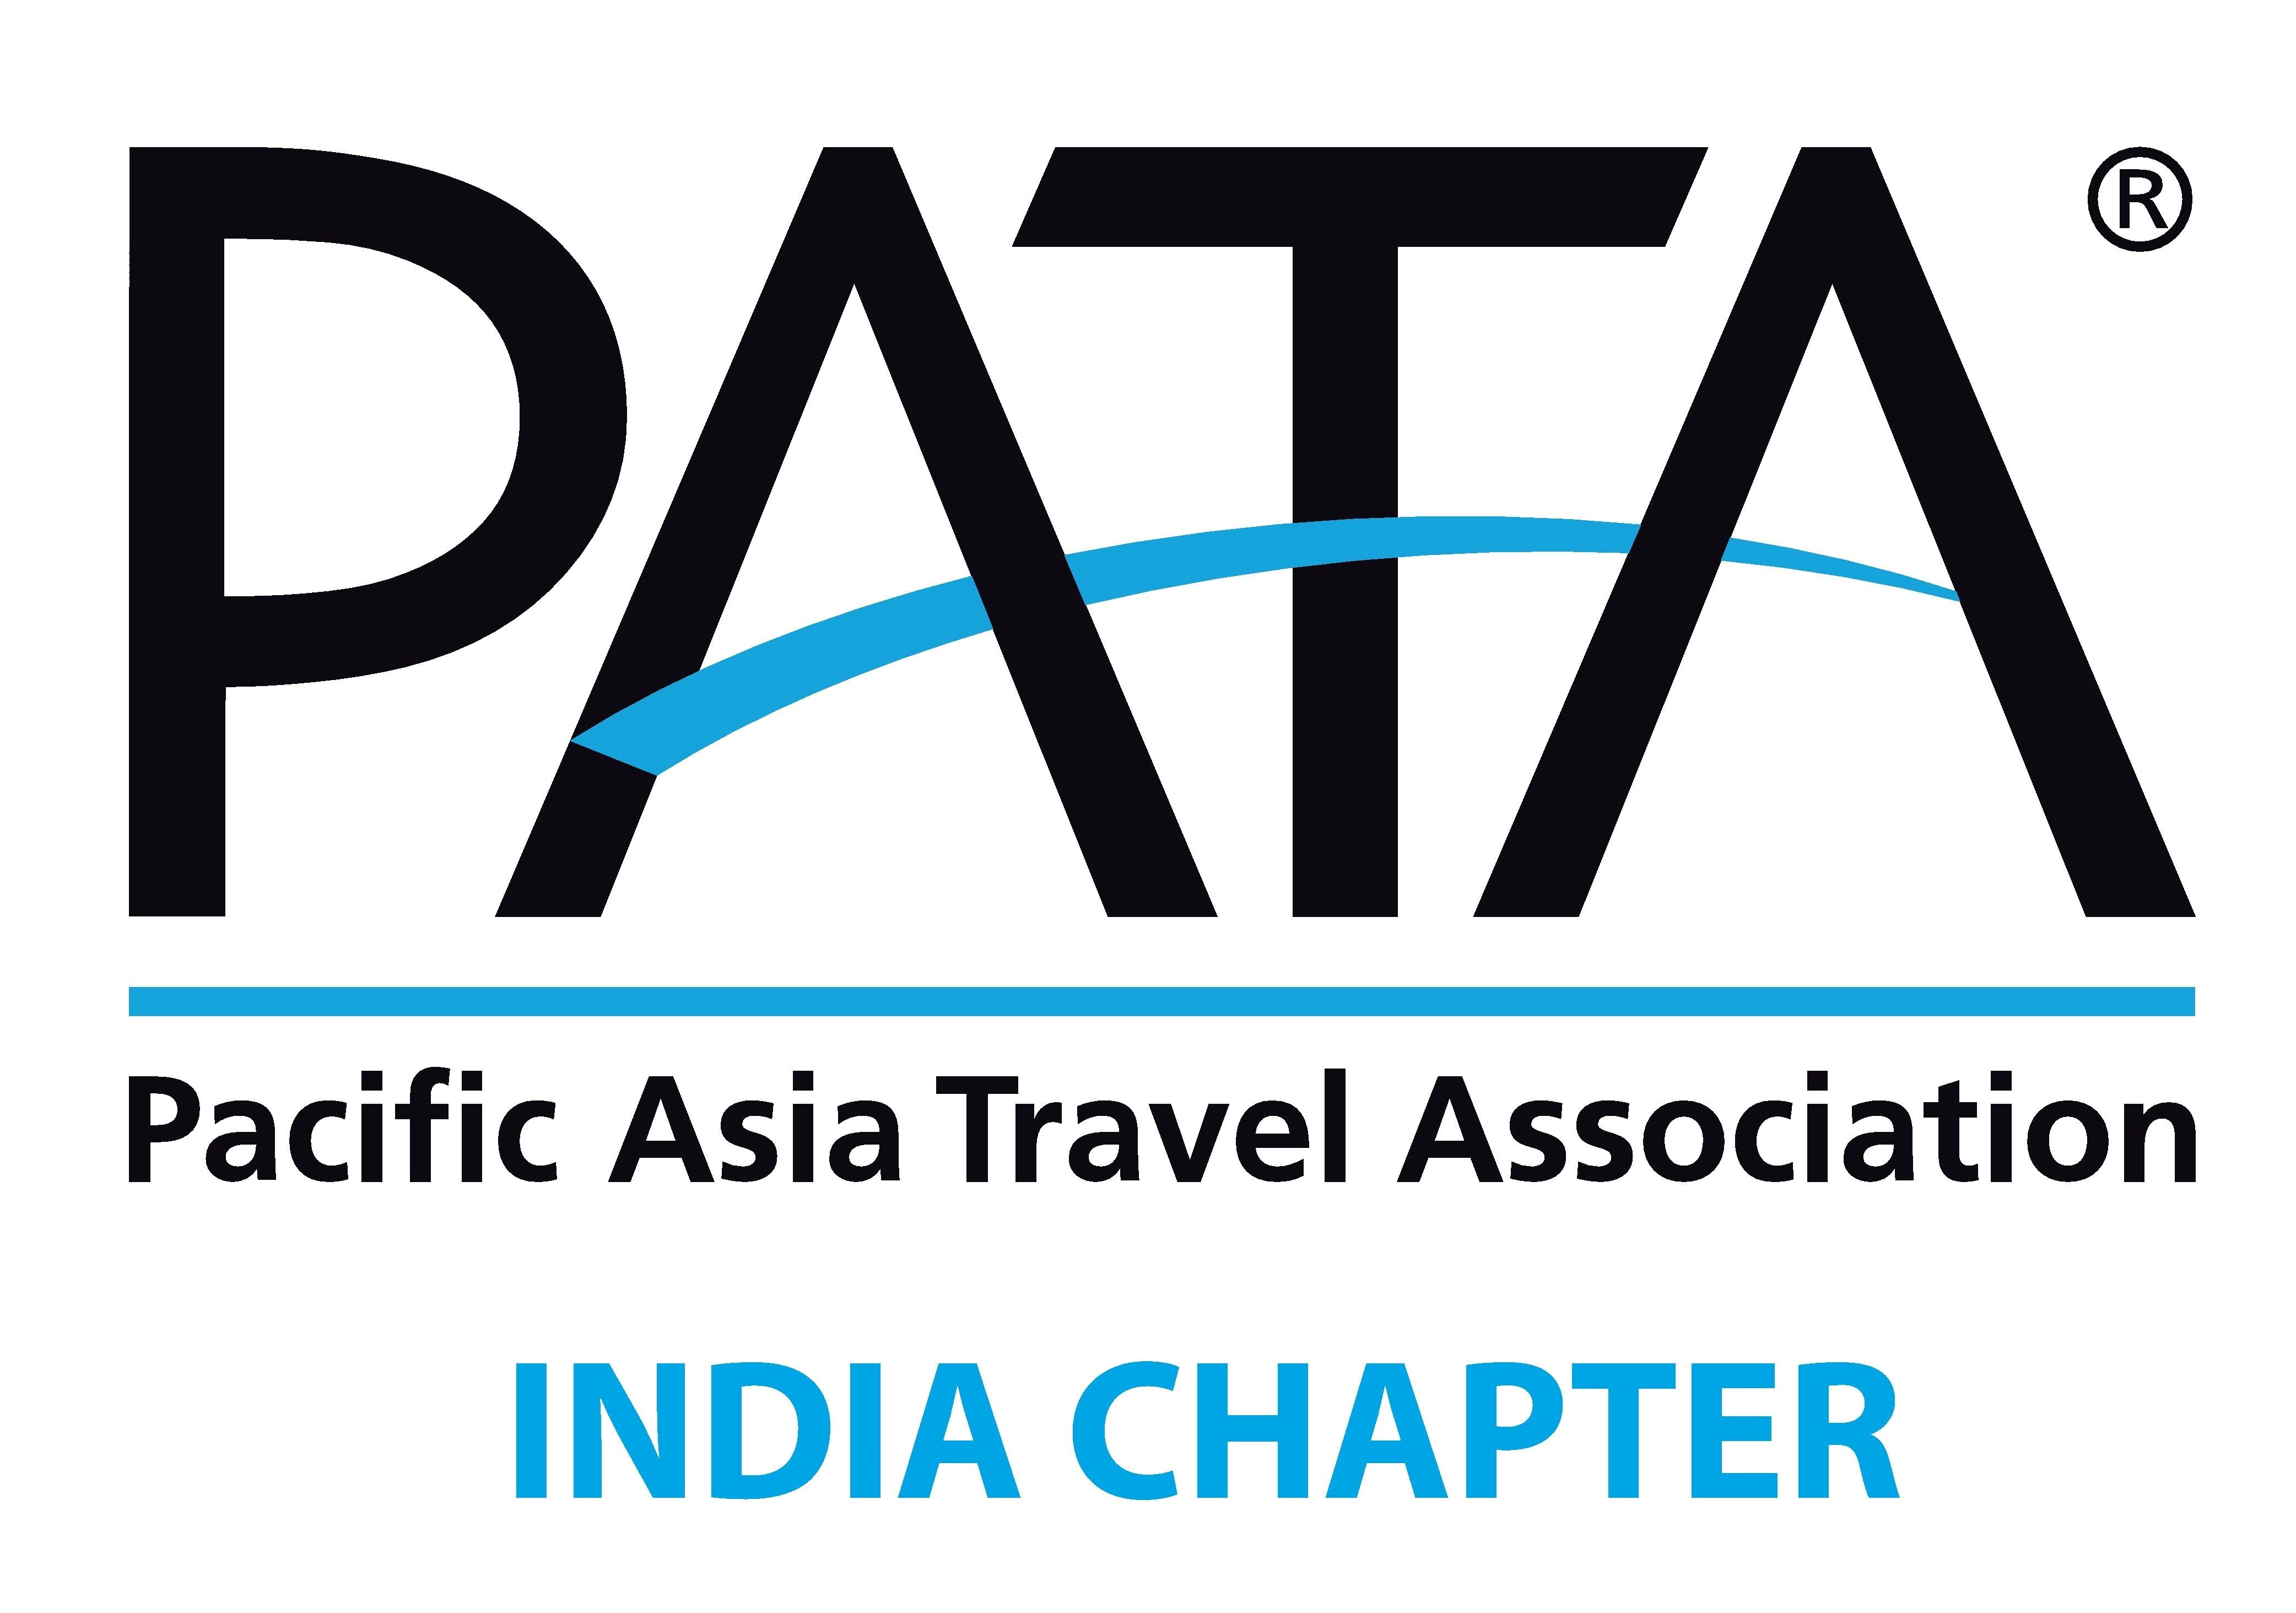 define pata in tourism